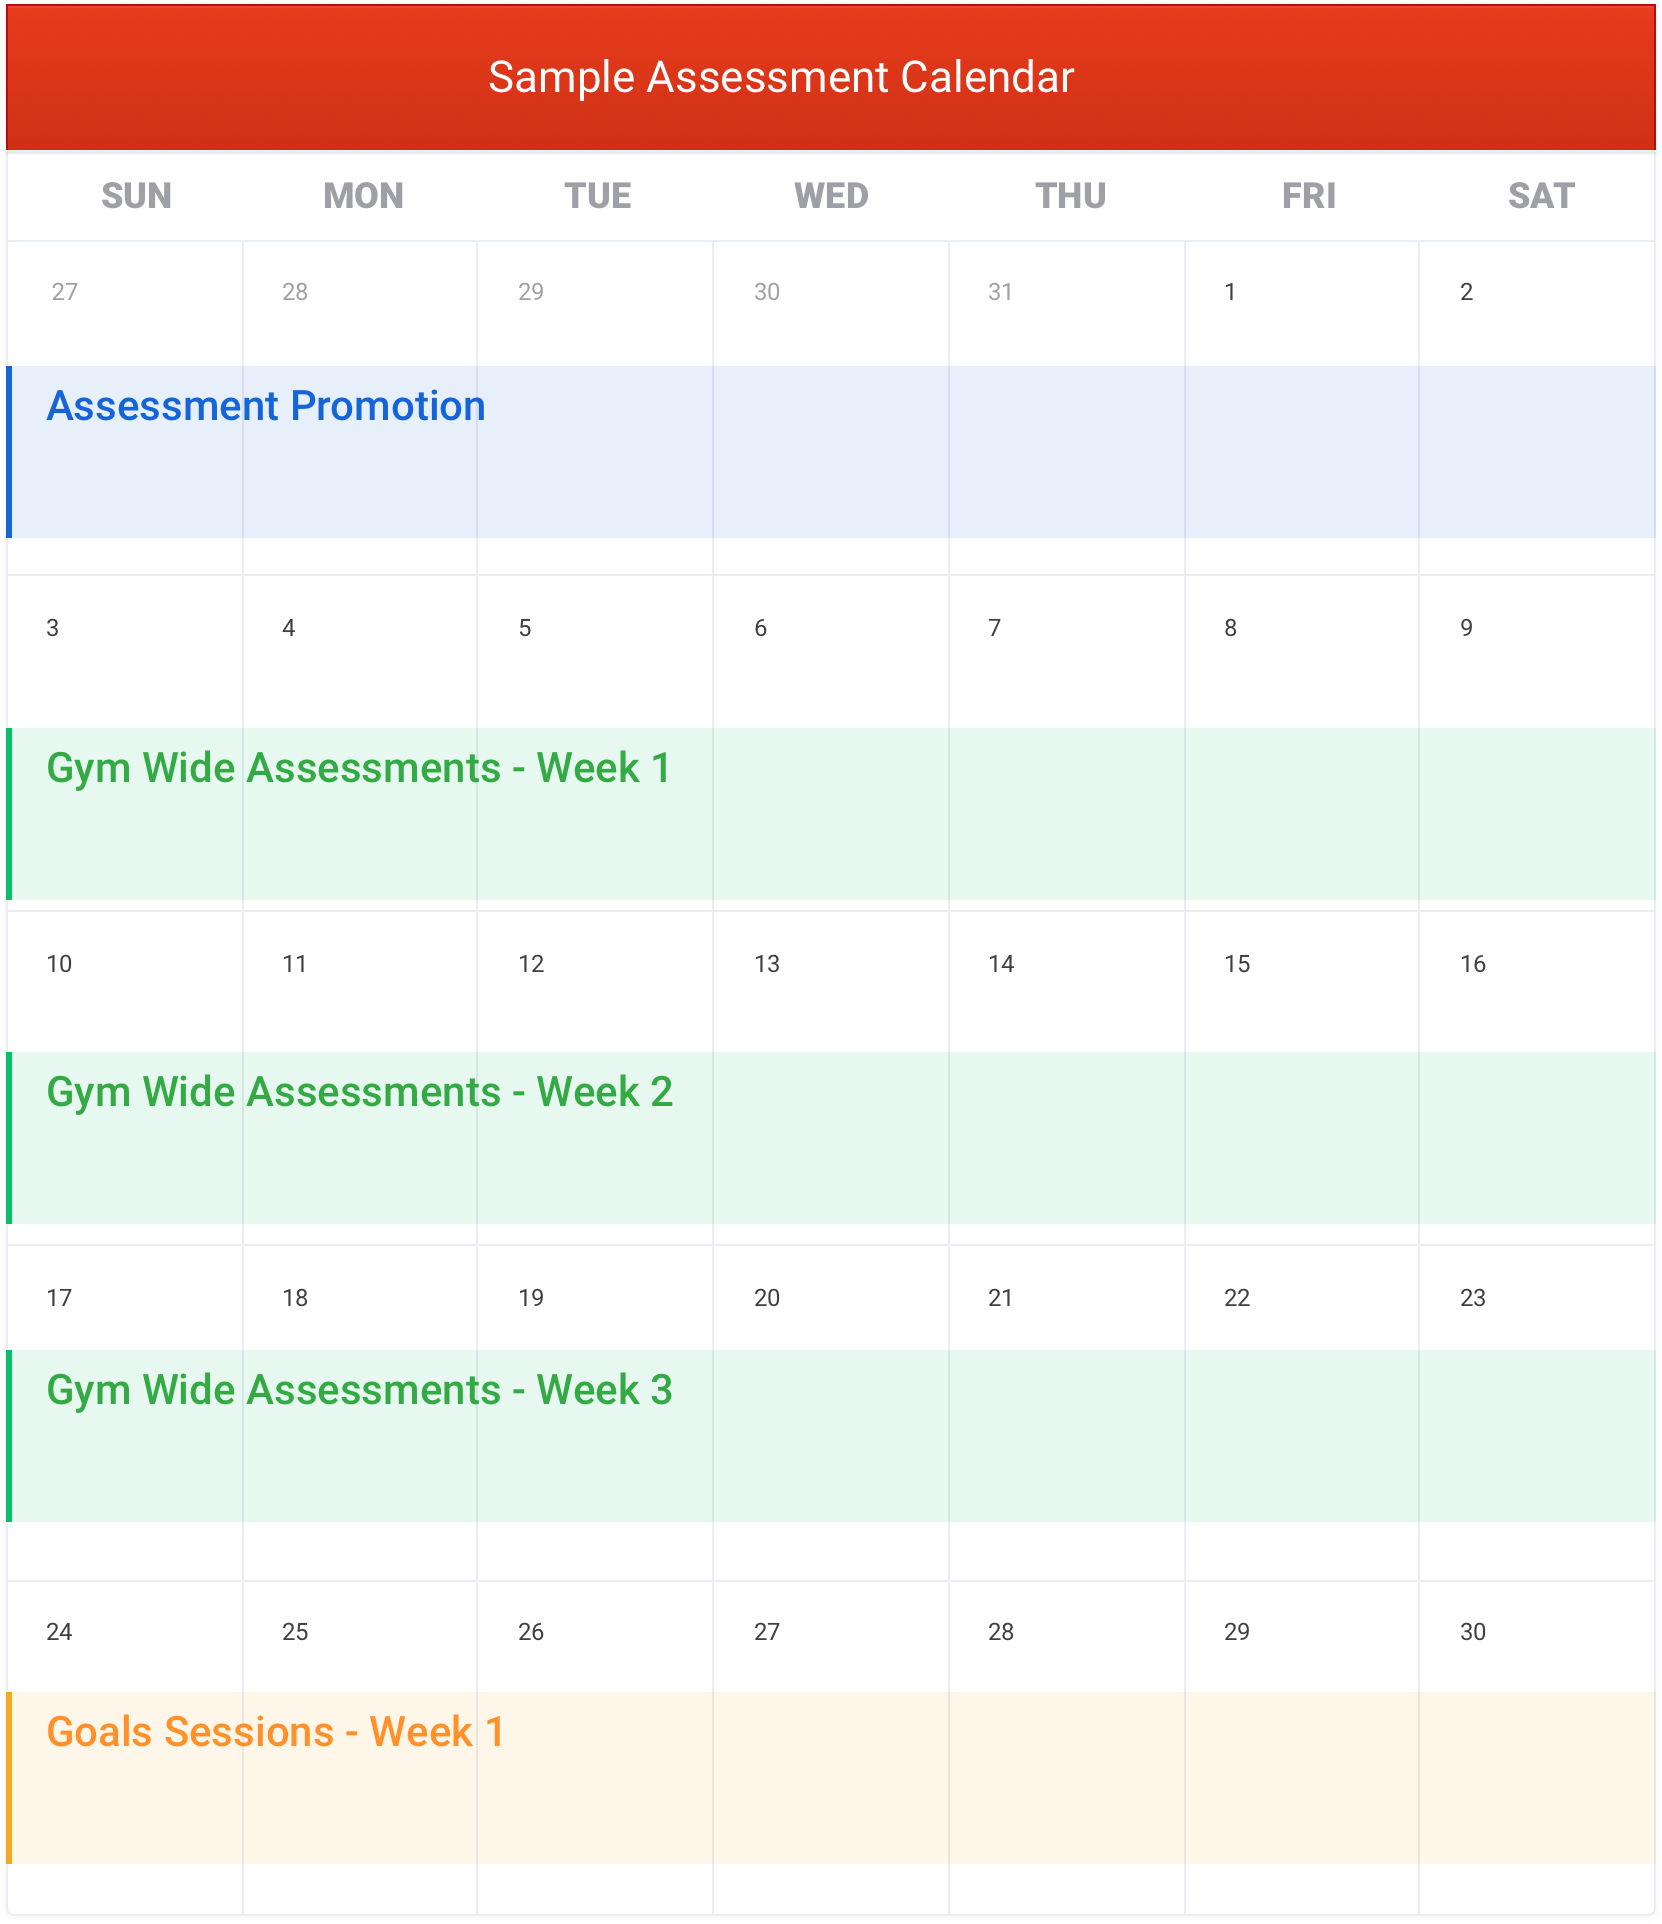 Sample Assessment Calendar